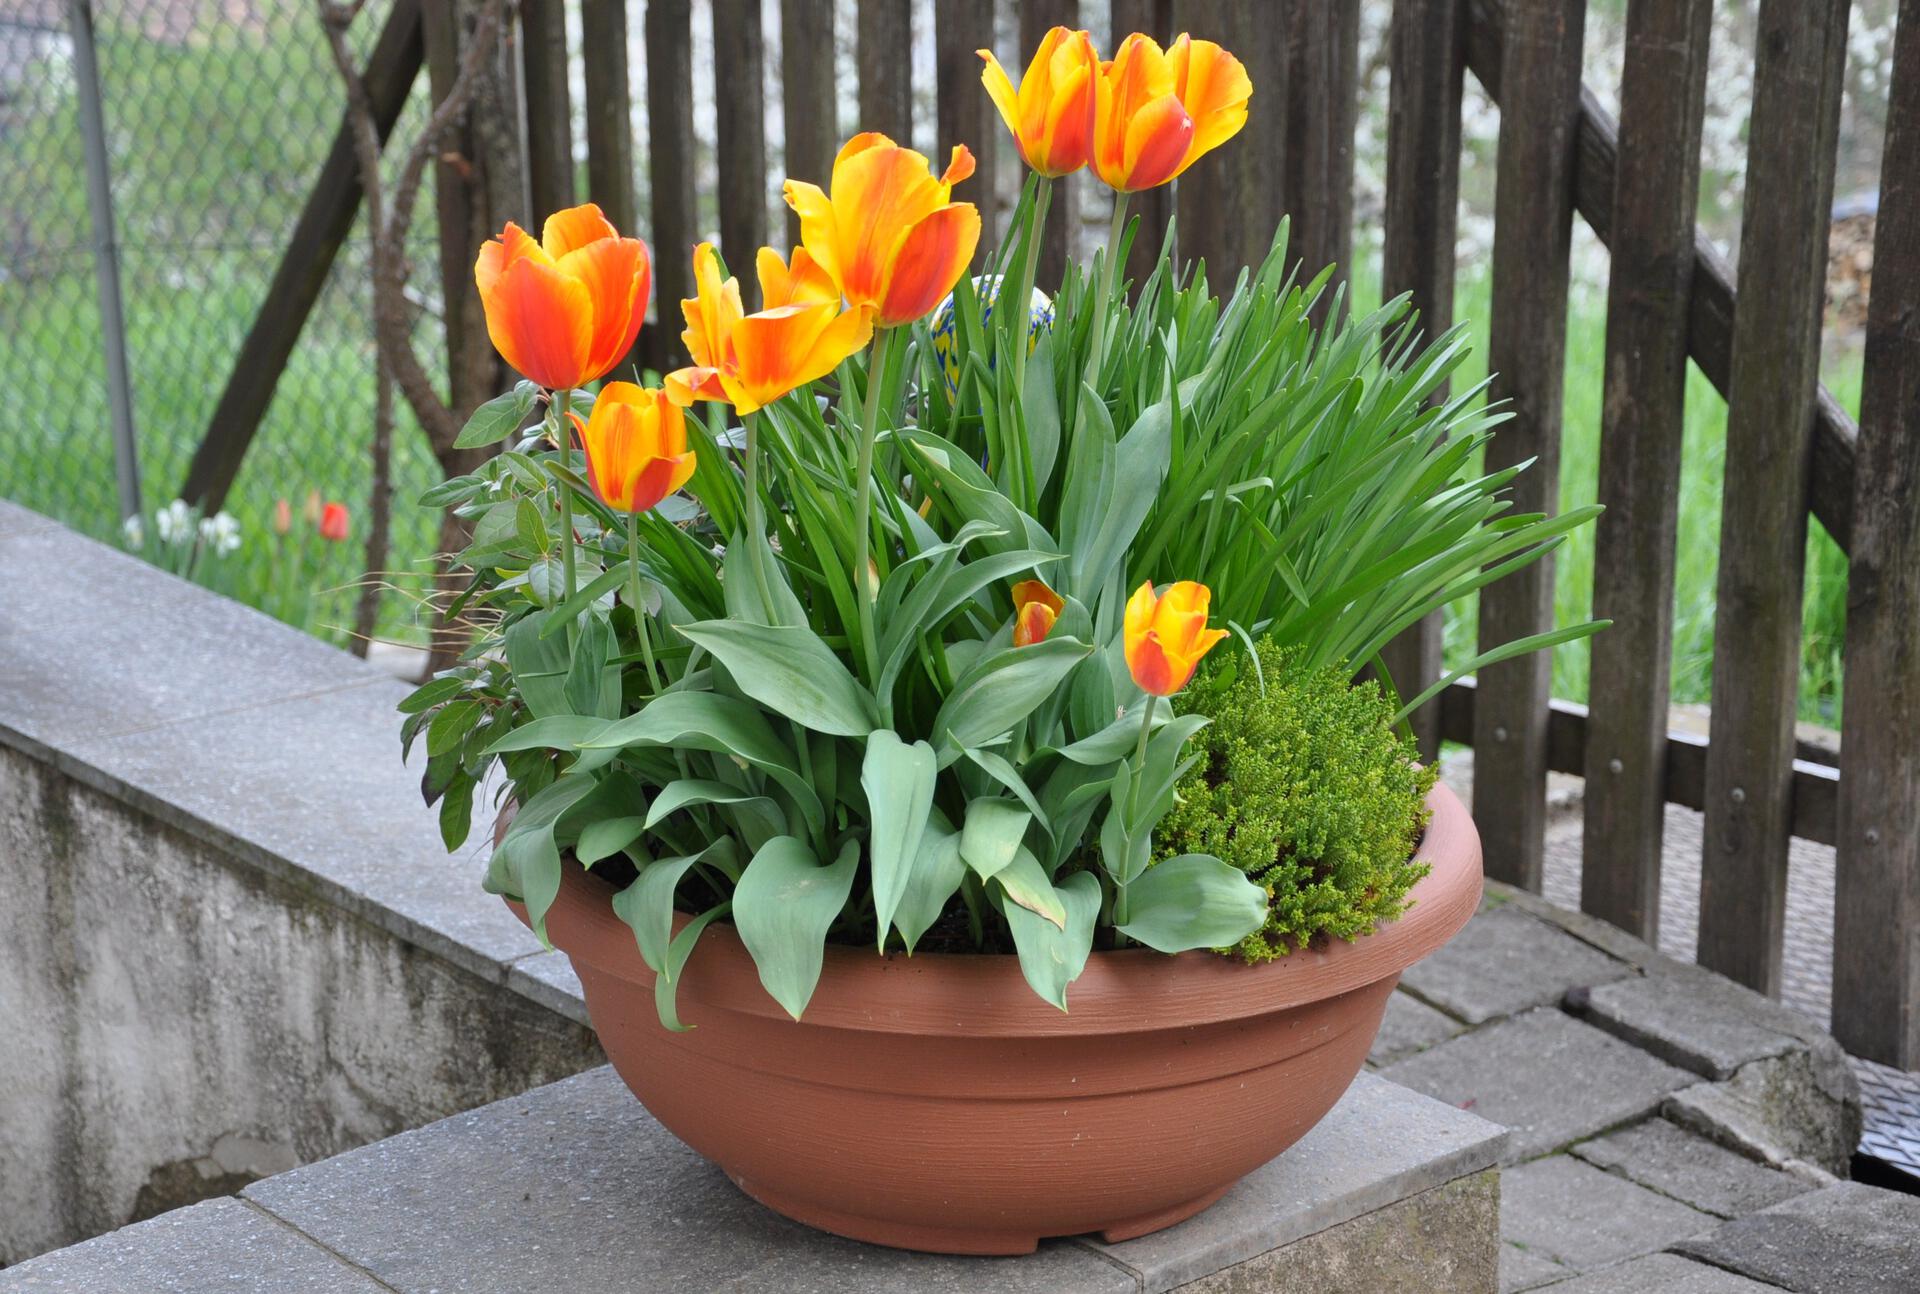 Tulips in a flower pot